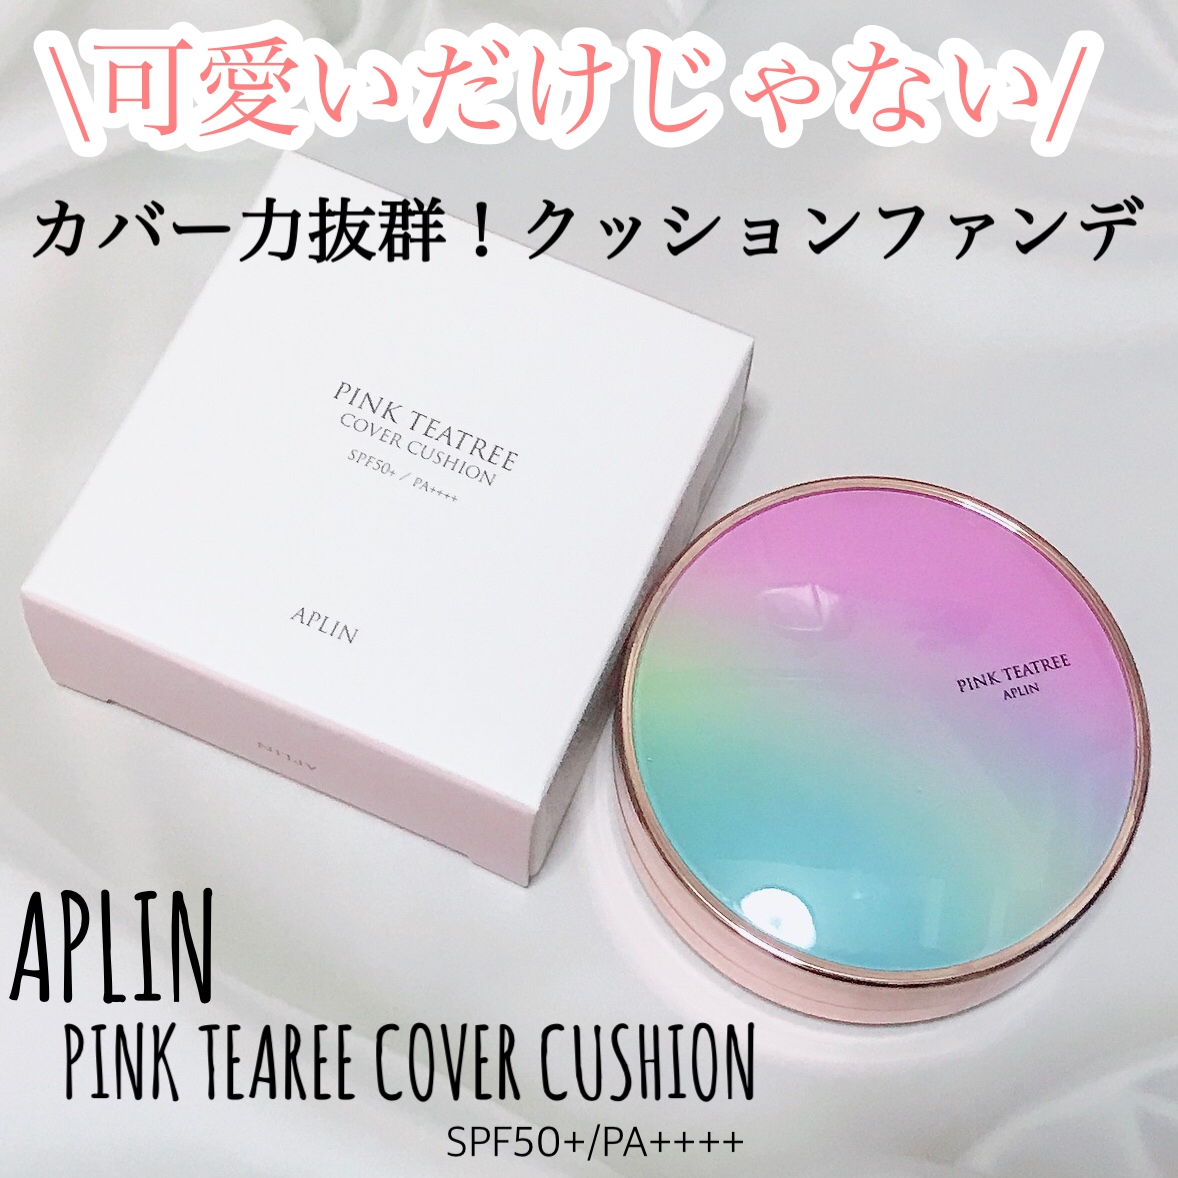 APLIN(アプリン) ピンクティーツリーカバークッションの良い点・メリットに関するMarukoさんの口コミ画像1